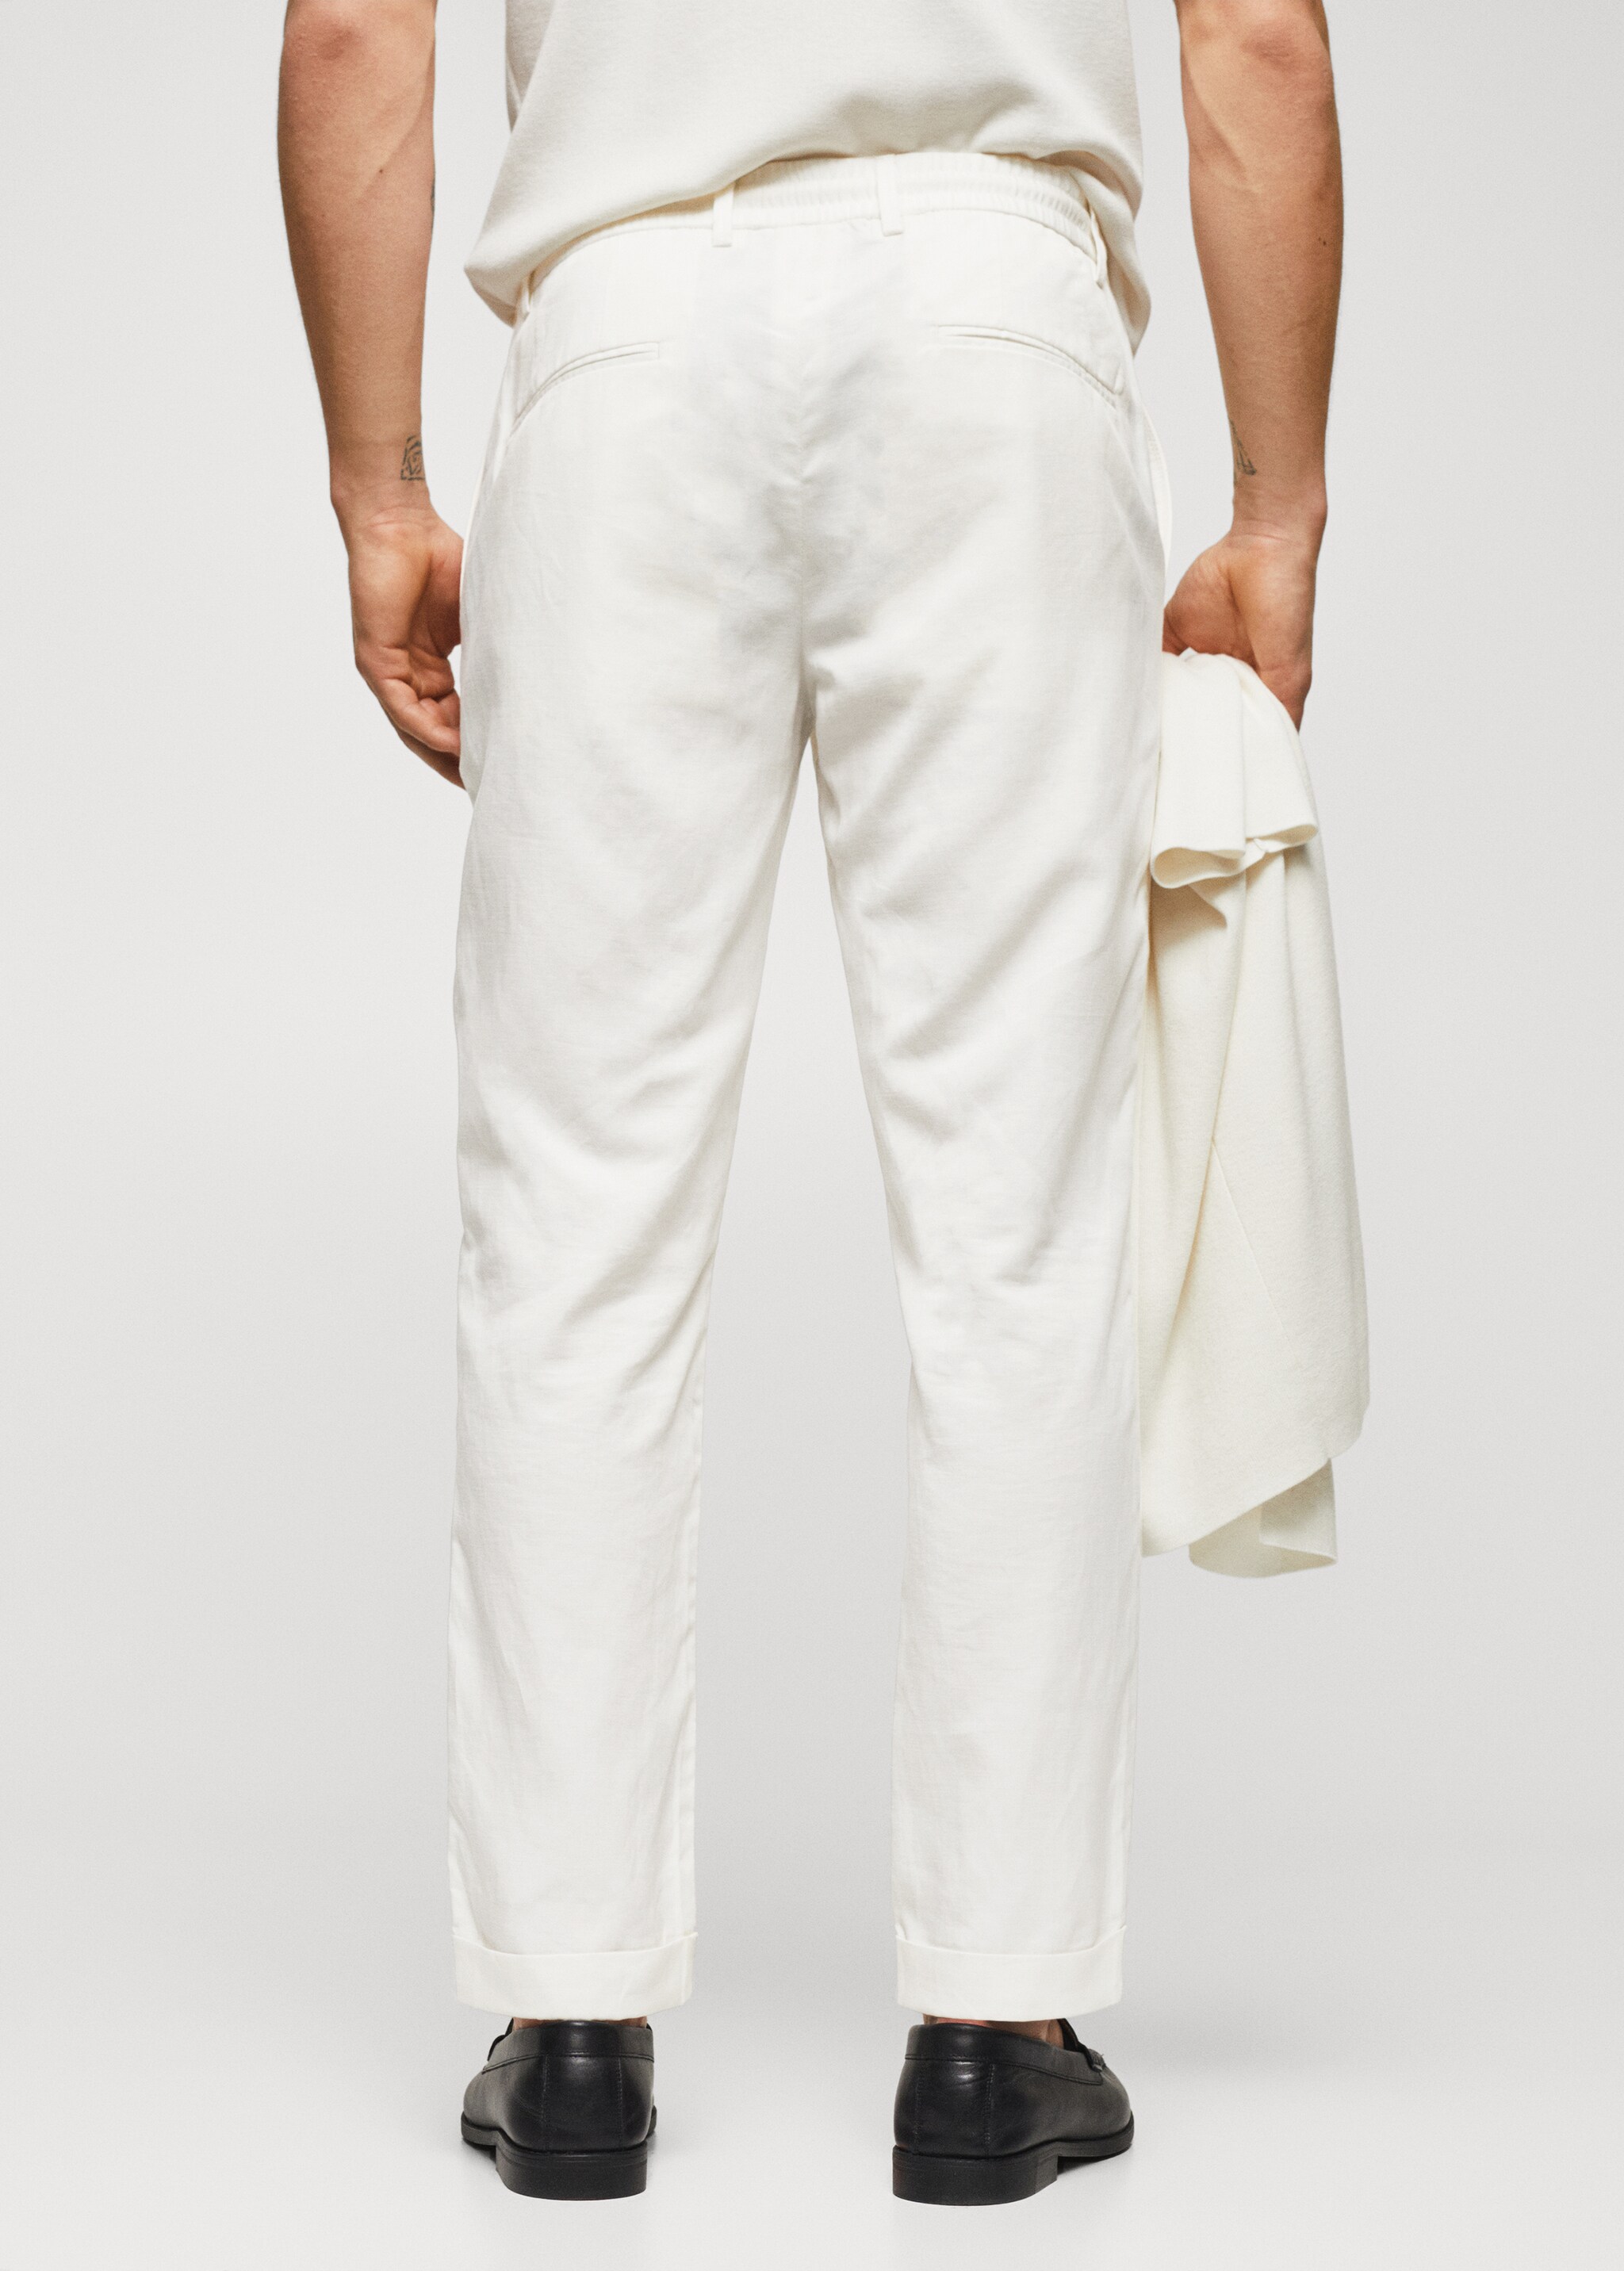 Pantalón cordón lino - lyocell - Reverso del artículo